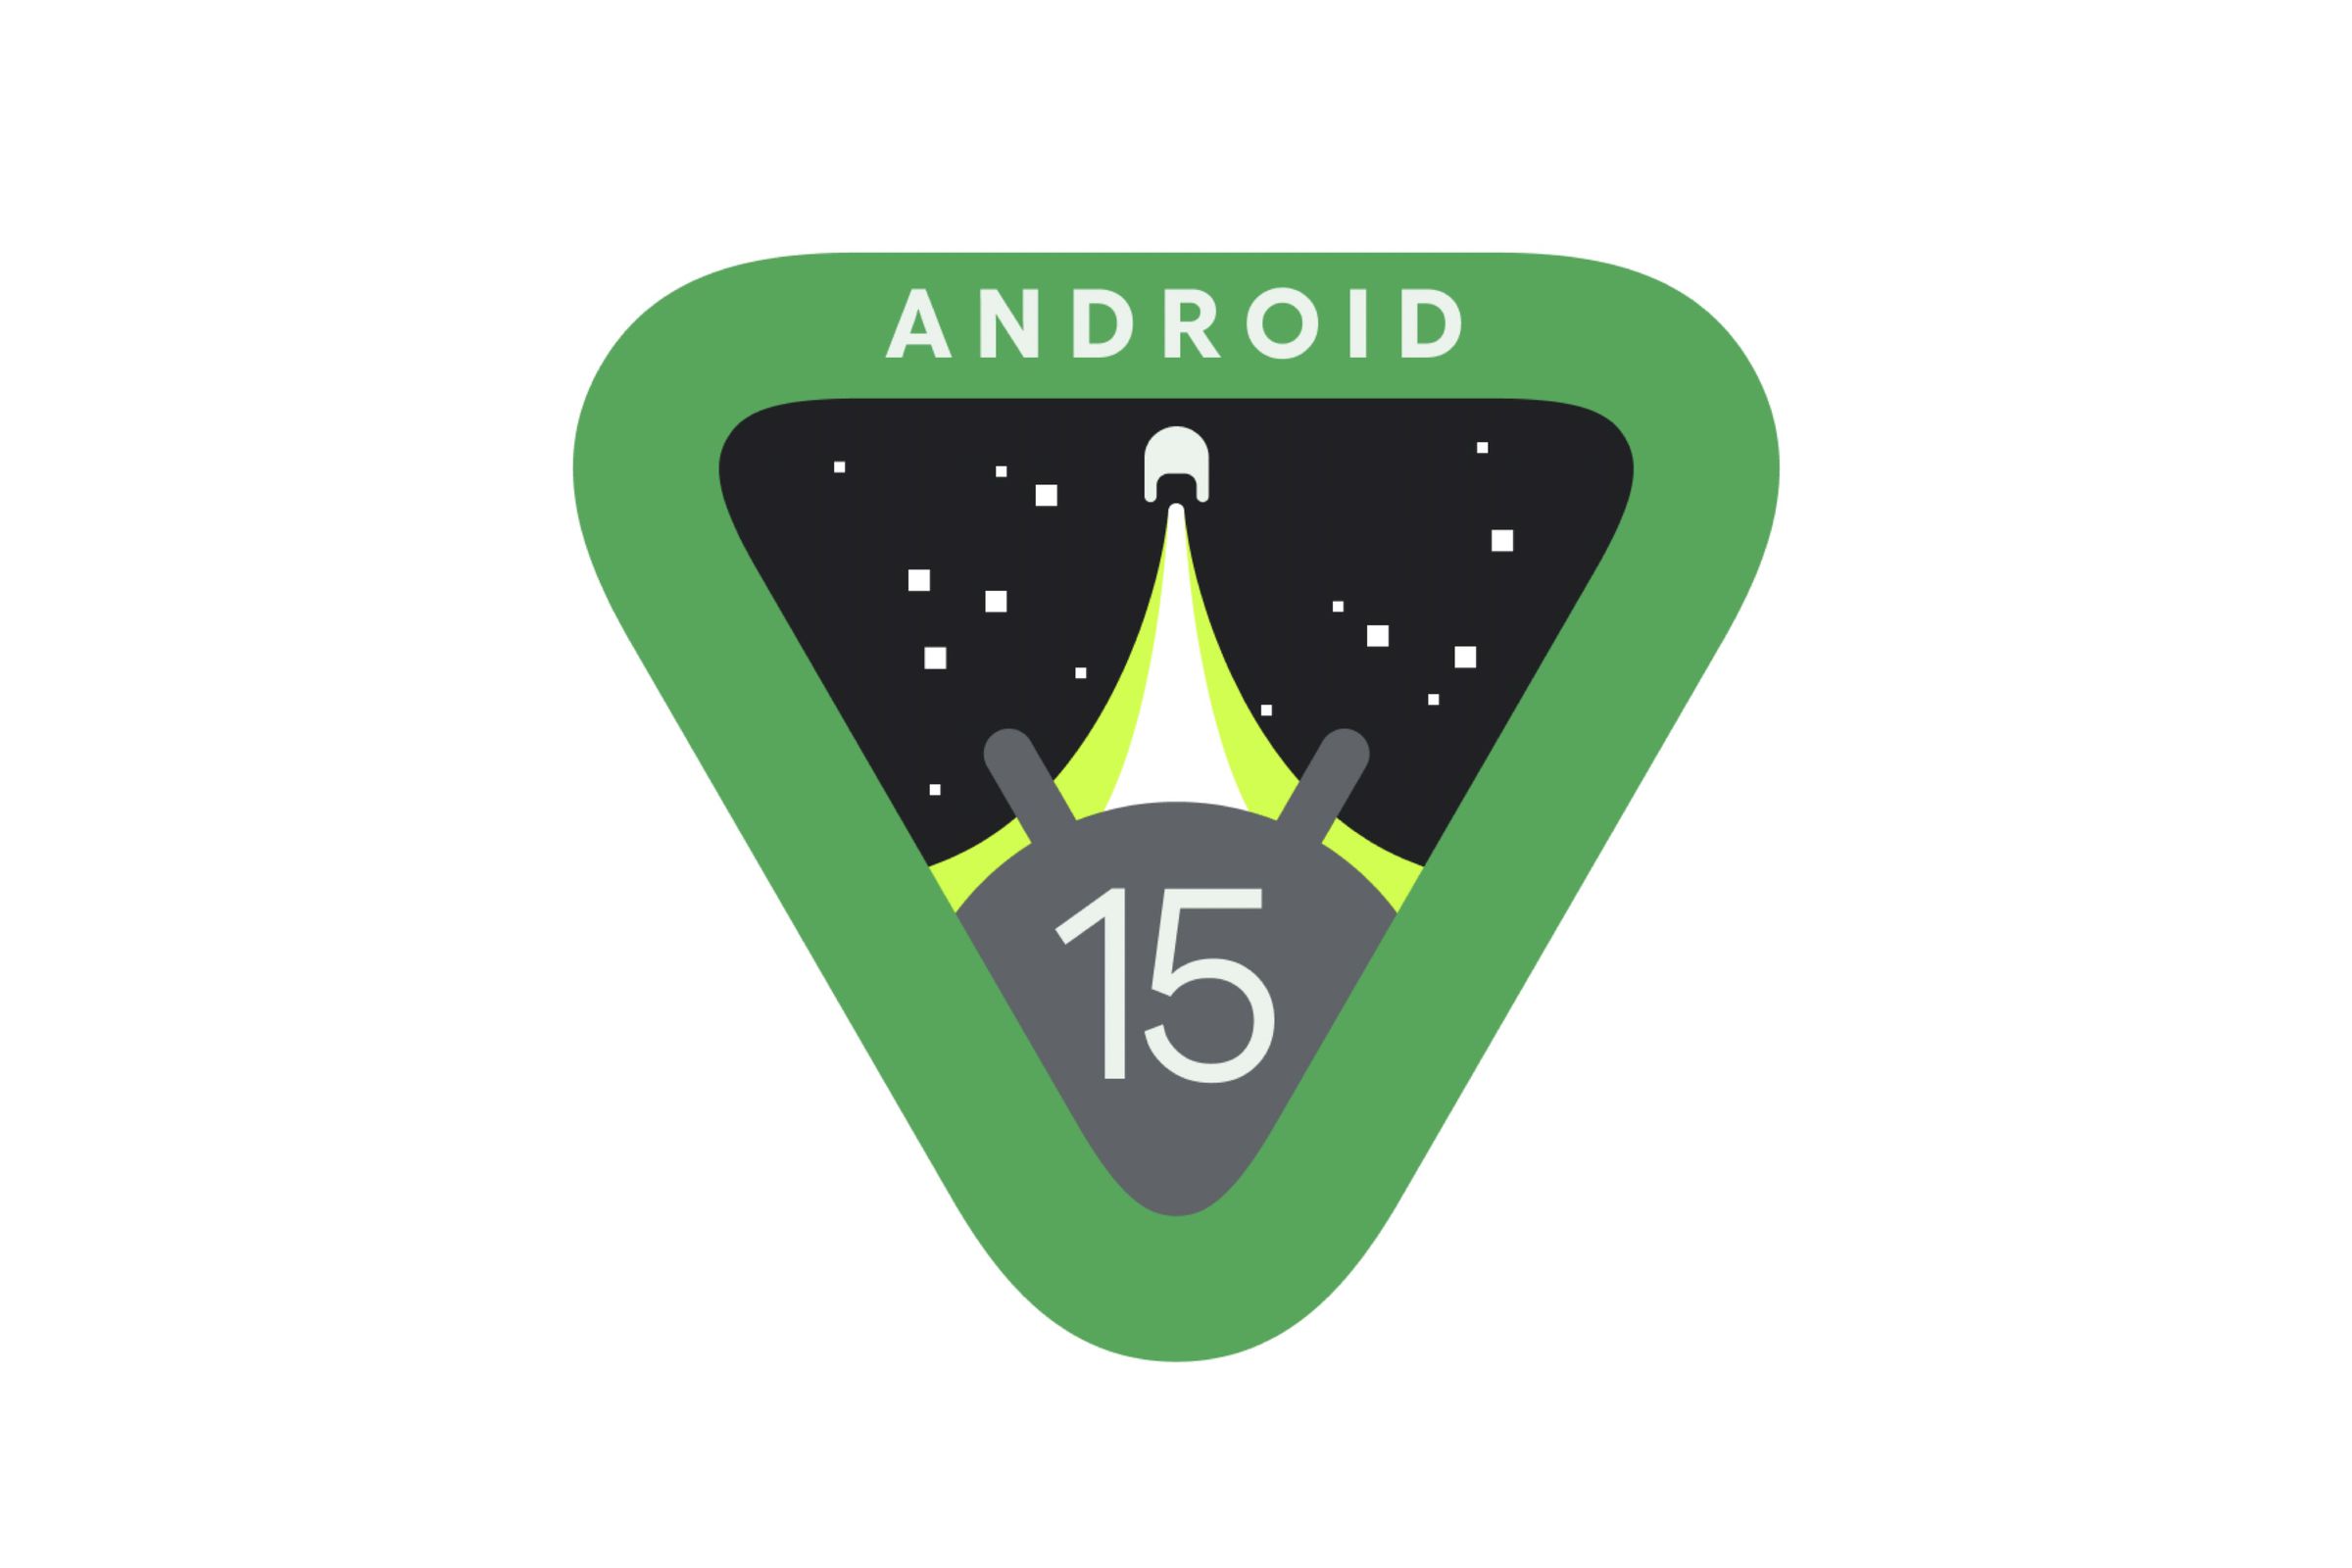 Logo Android 15, segitiga hijau terbalik dengan roket meluncur ke bintang dan karakter Android melihat ke atas